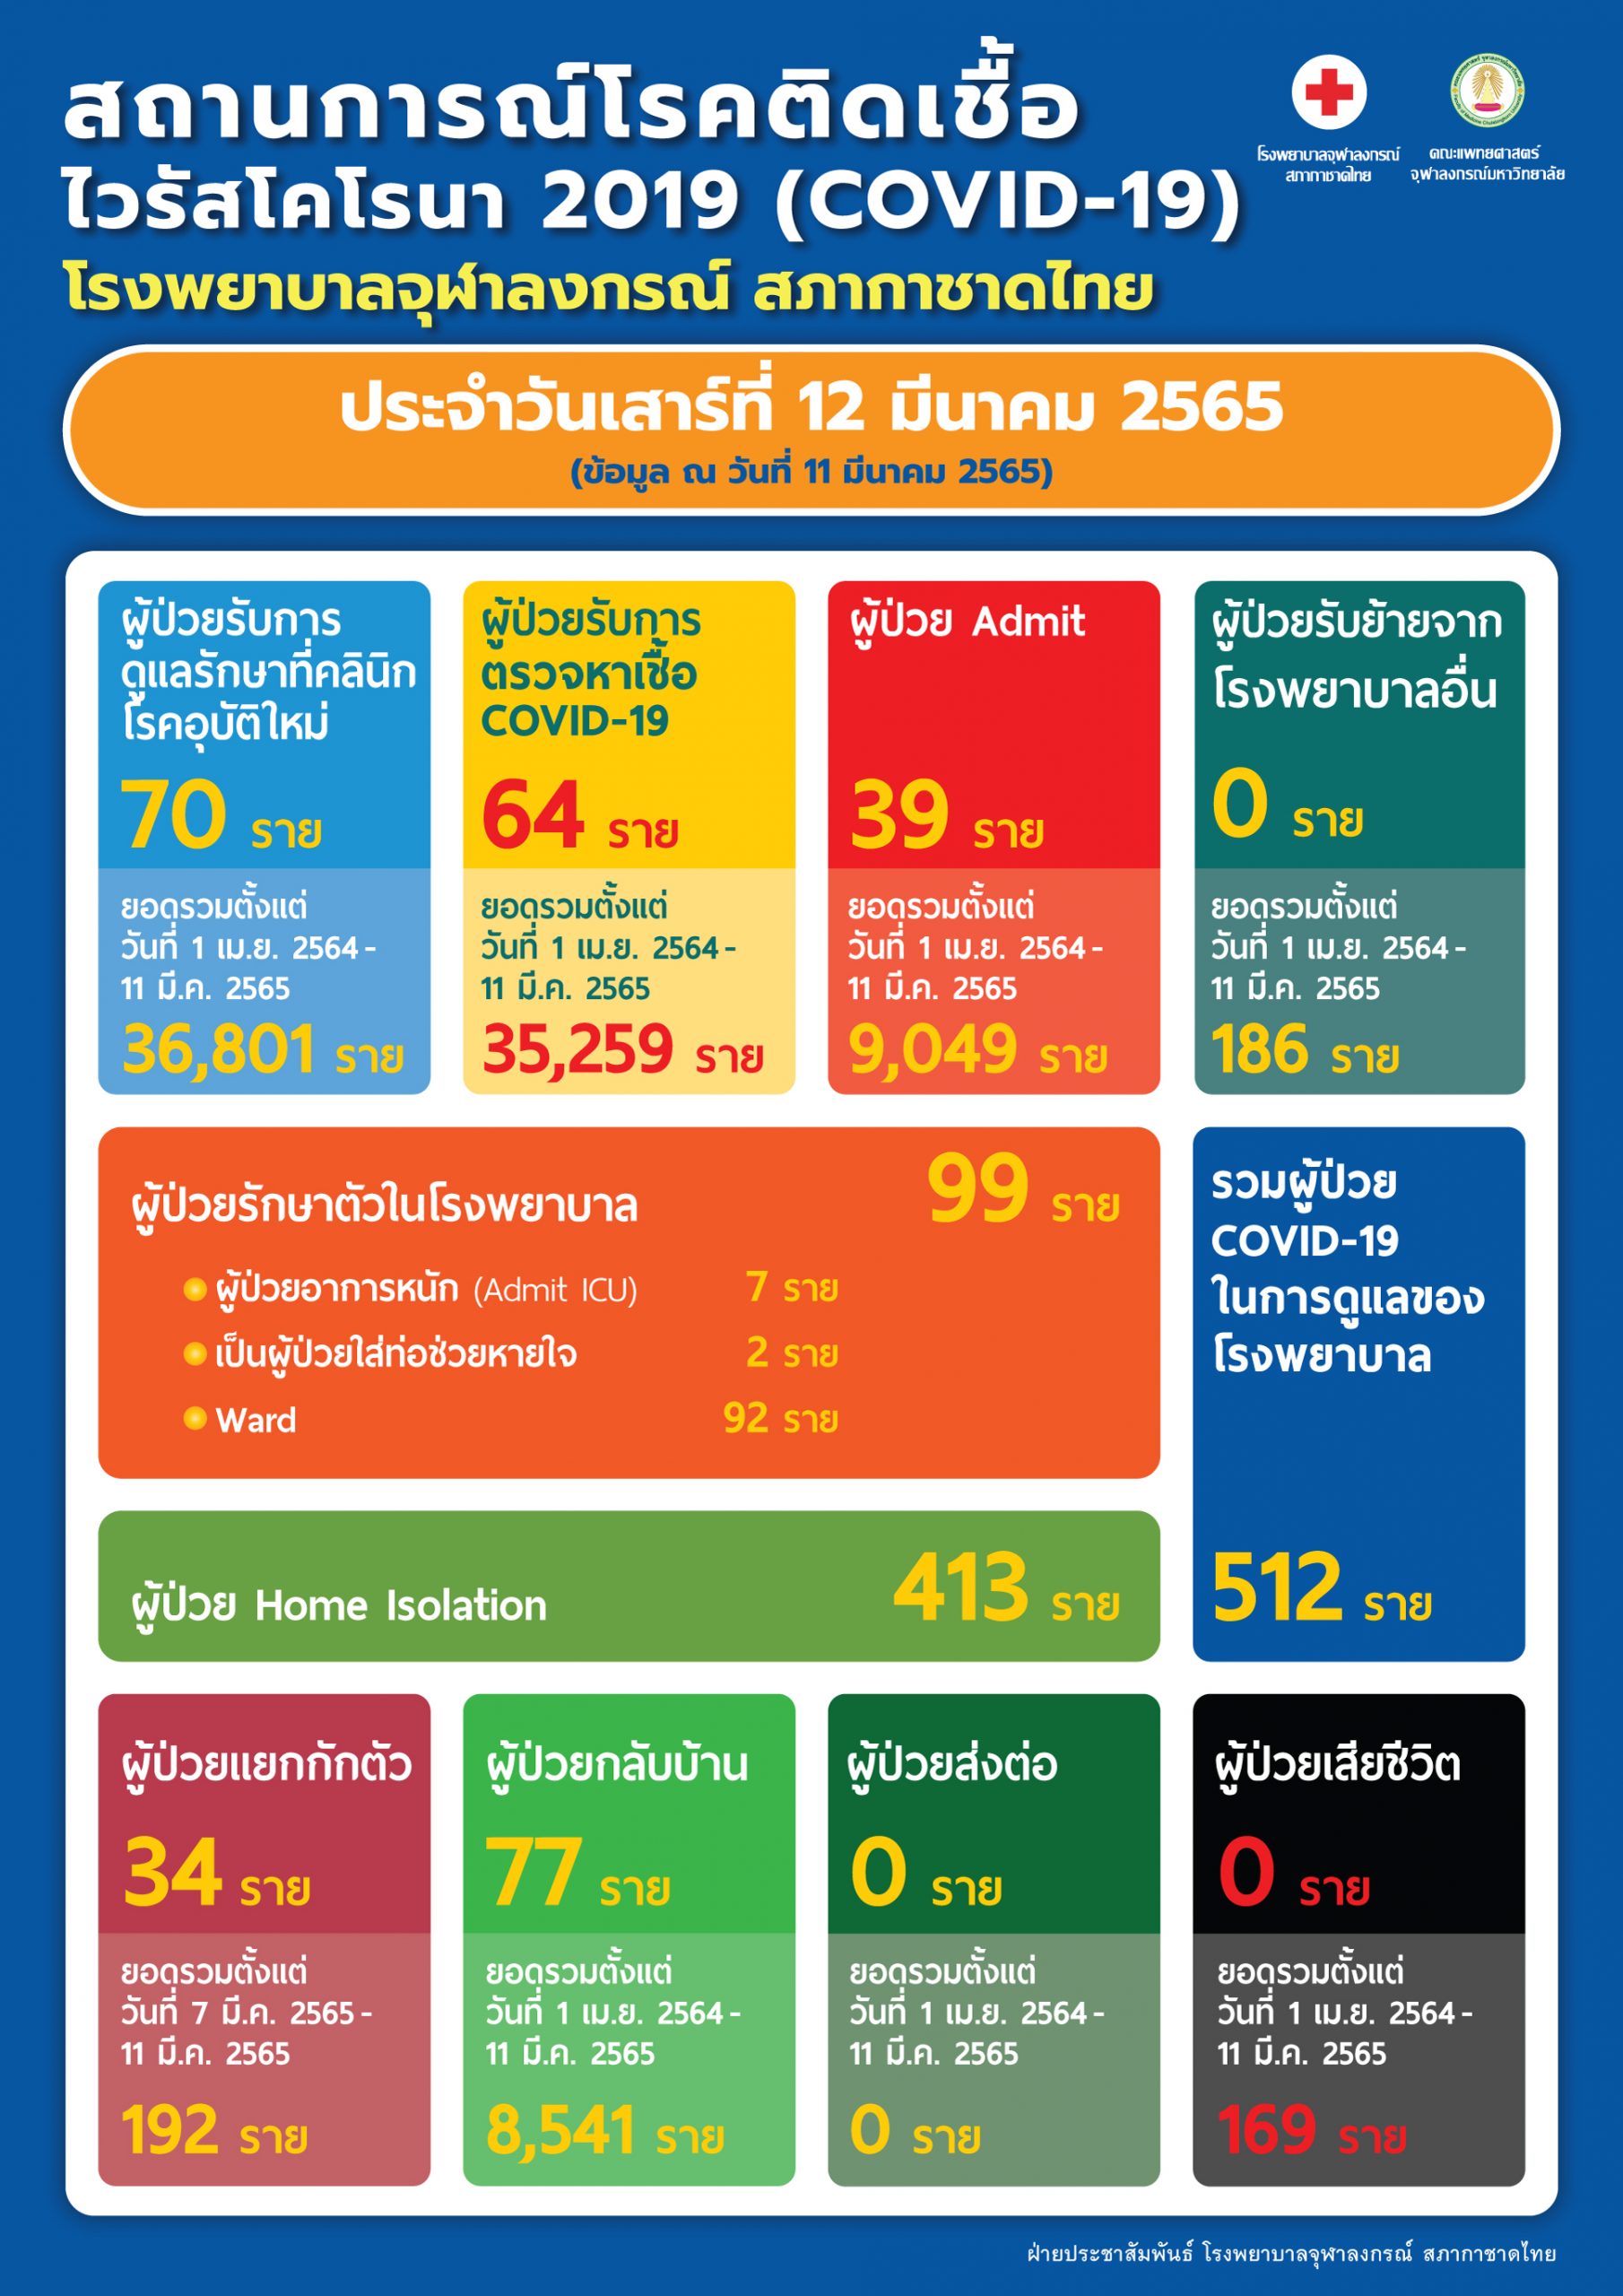 สถานการณ์โรคติดเชื้อไวรัสโคโรนา 2019 (COVID-19) โรงพยาบาลจุฬาลงกรณ์ สภากาชาดไทย ประจำวันเสาร์ที่ 12 มีนาคม 2565